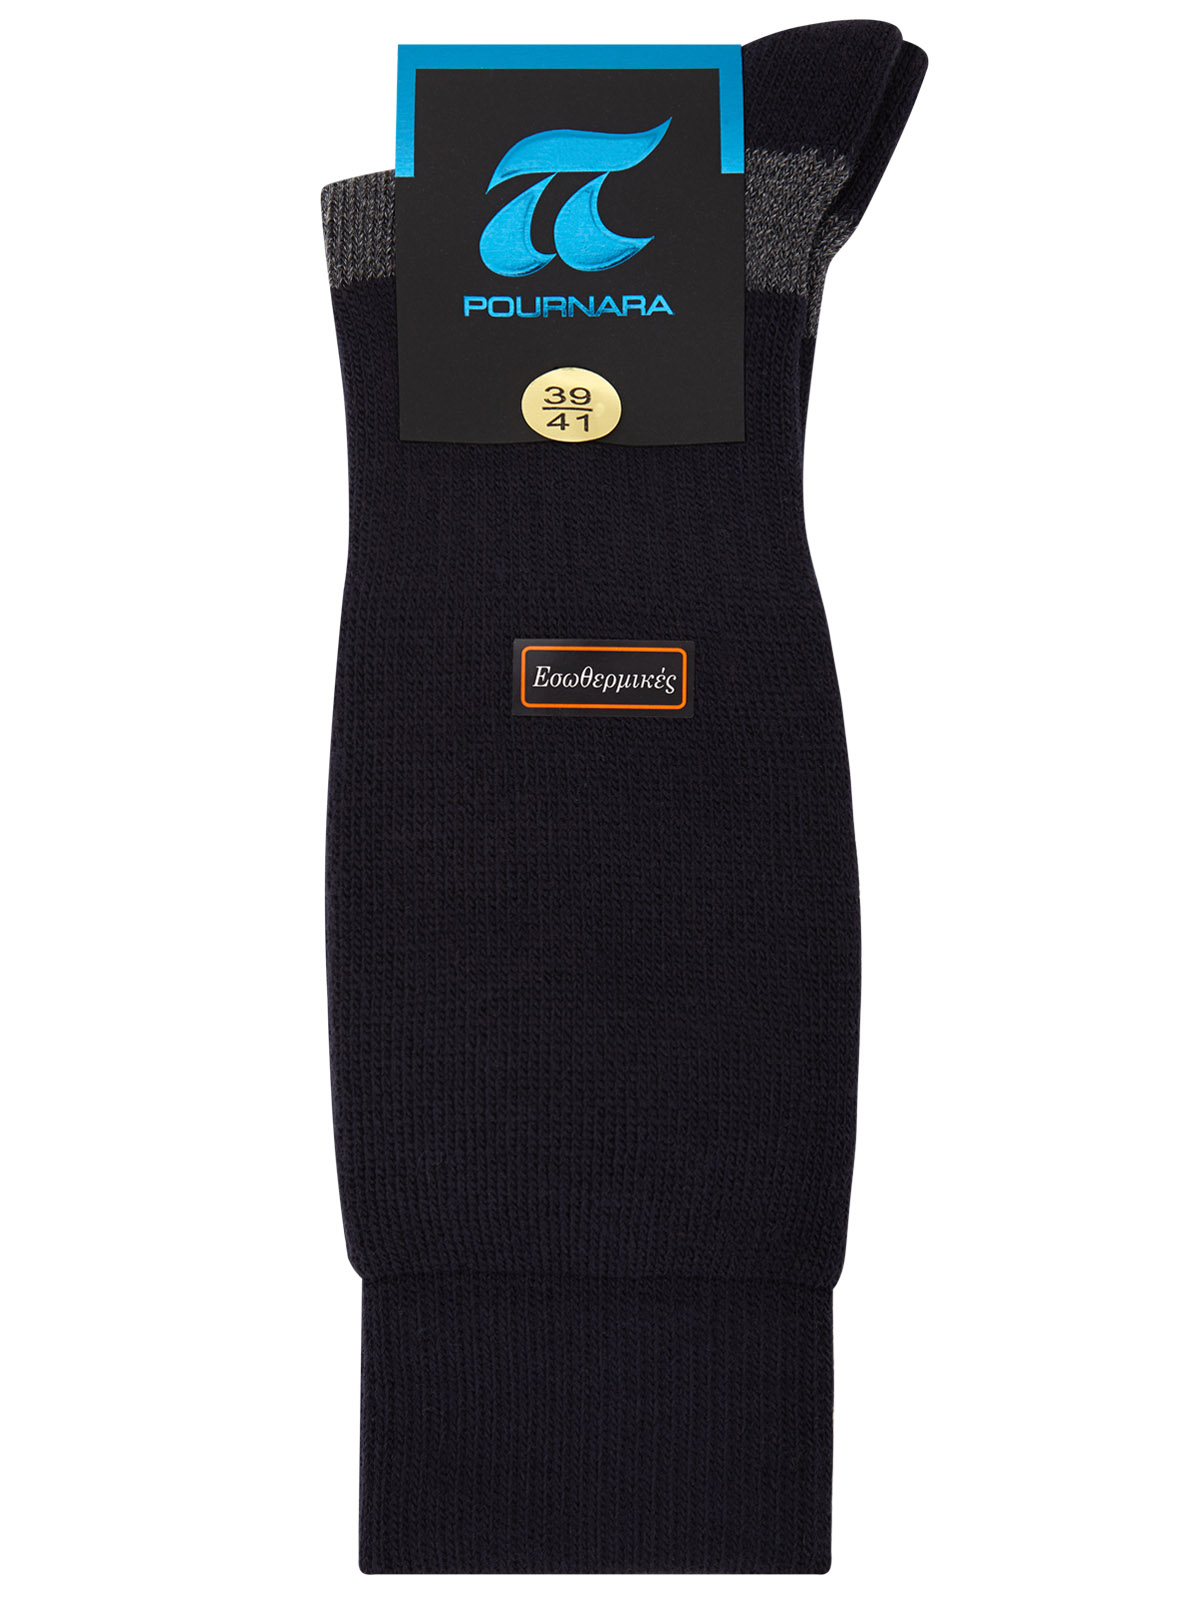 Ανδρική εσωθερμική κάλτσα Πουρνάρα - Μάλλινη - Μαύρη